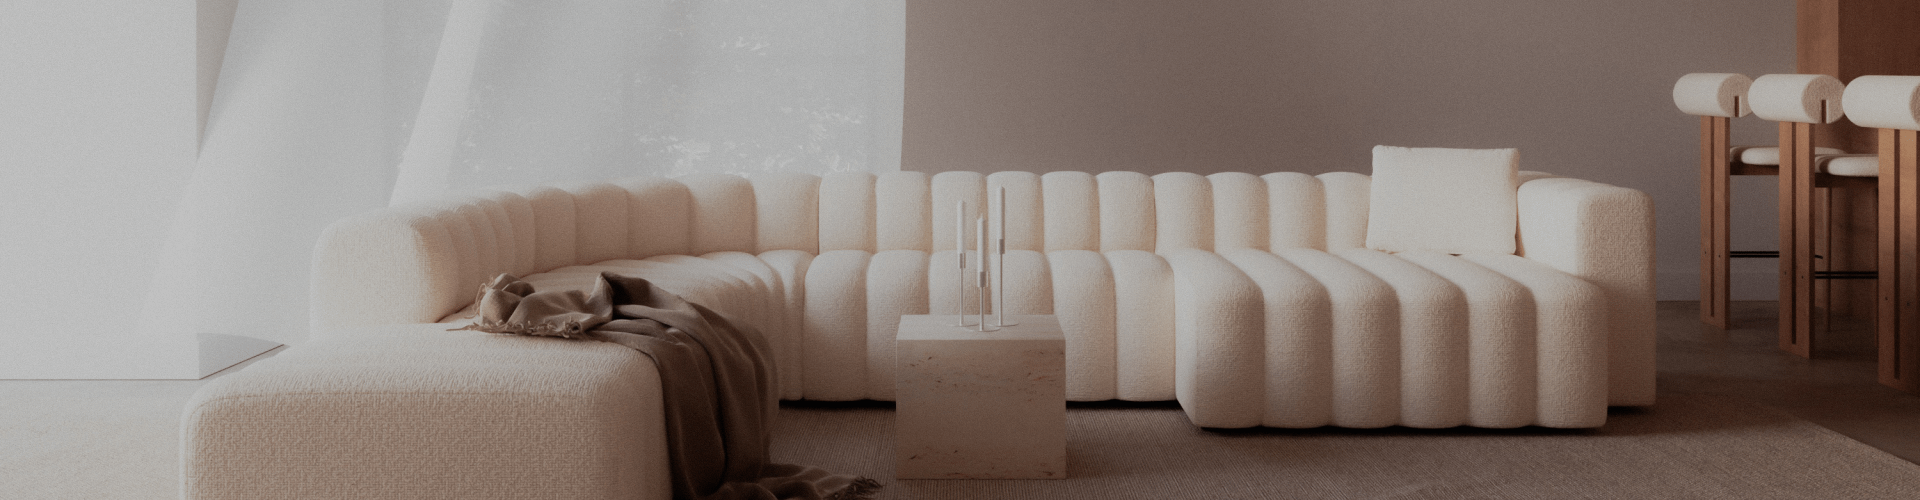 Un canapé blanc dans une pièce bien éclairée, entouré de meubles de designers.